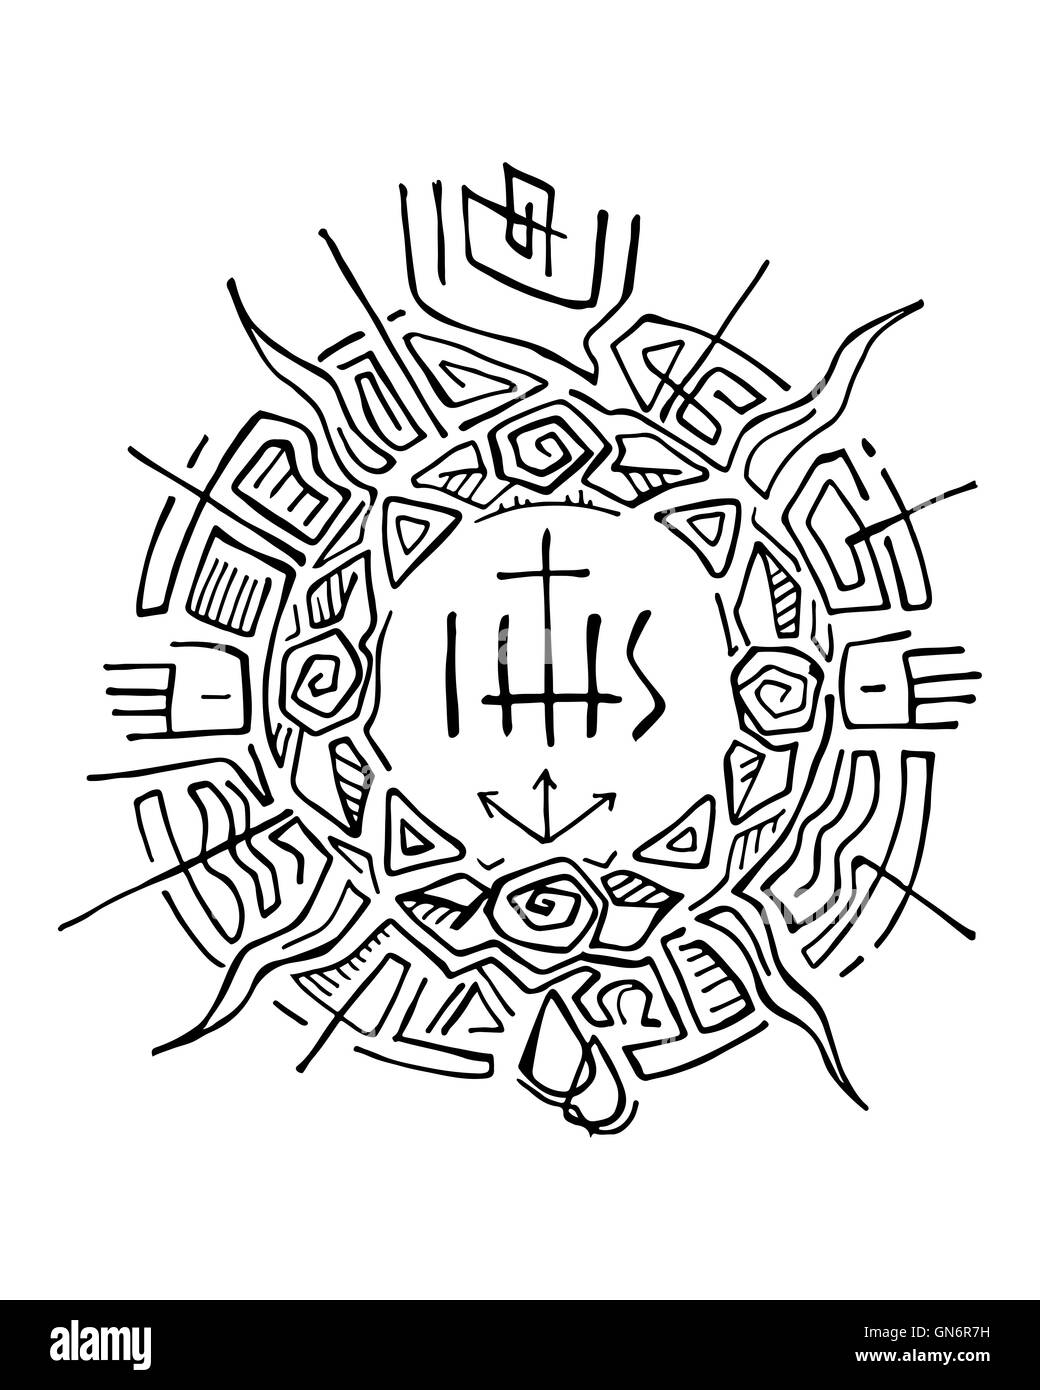 Illustration à la main ou d'un dessin d'un soleil abstrait avec des symboles chrétiens religieux Banque D'Images